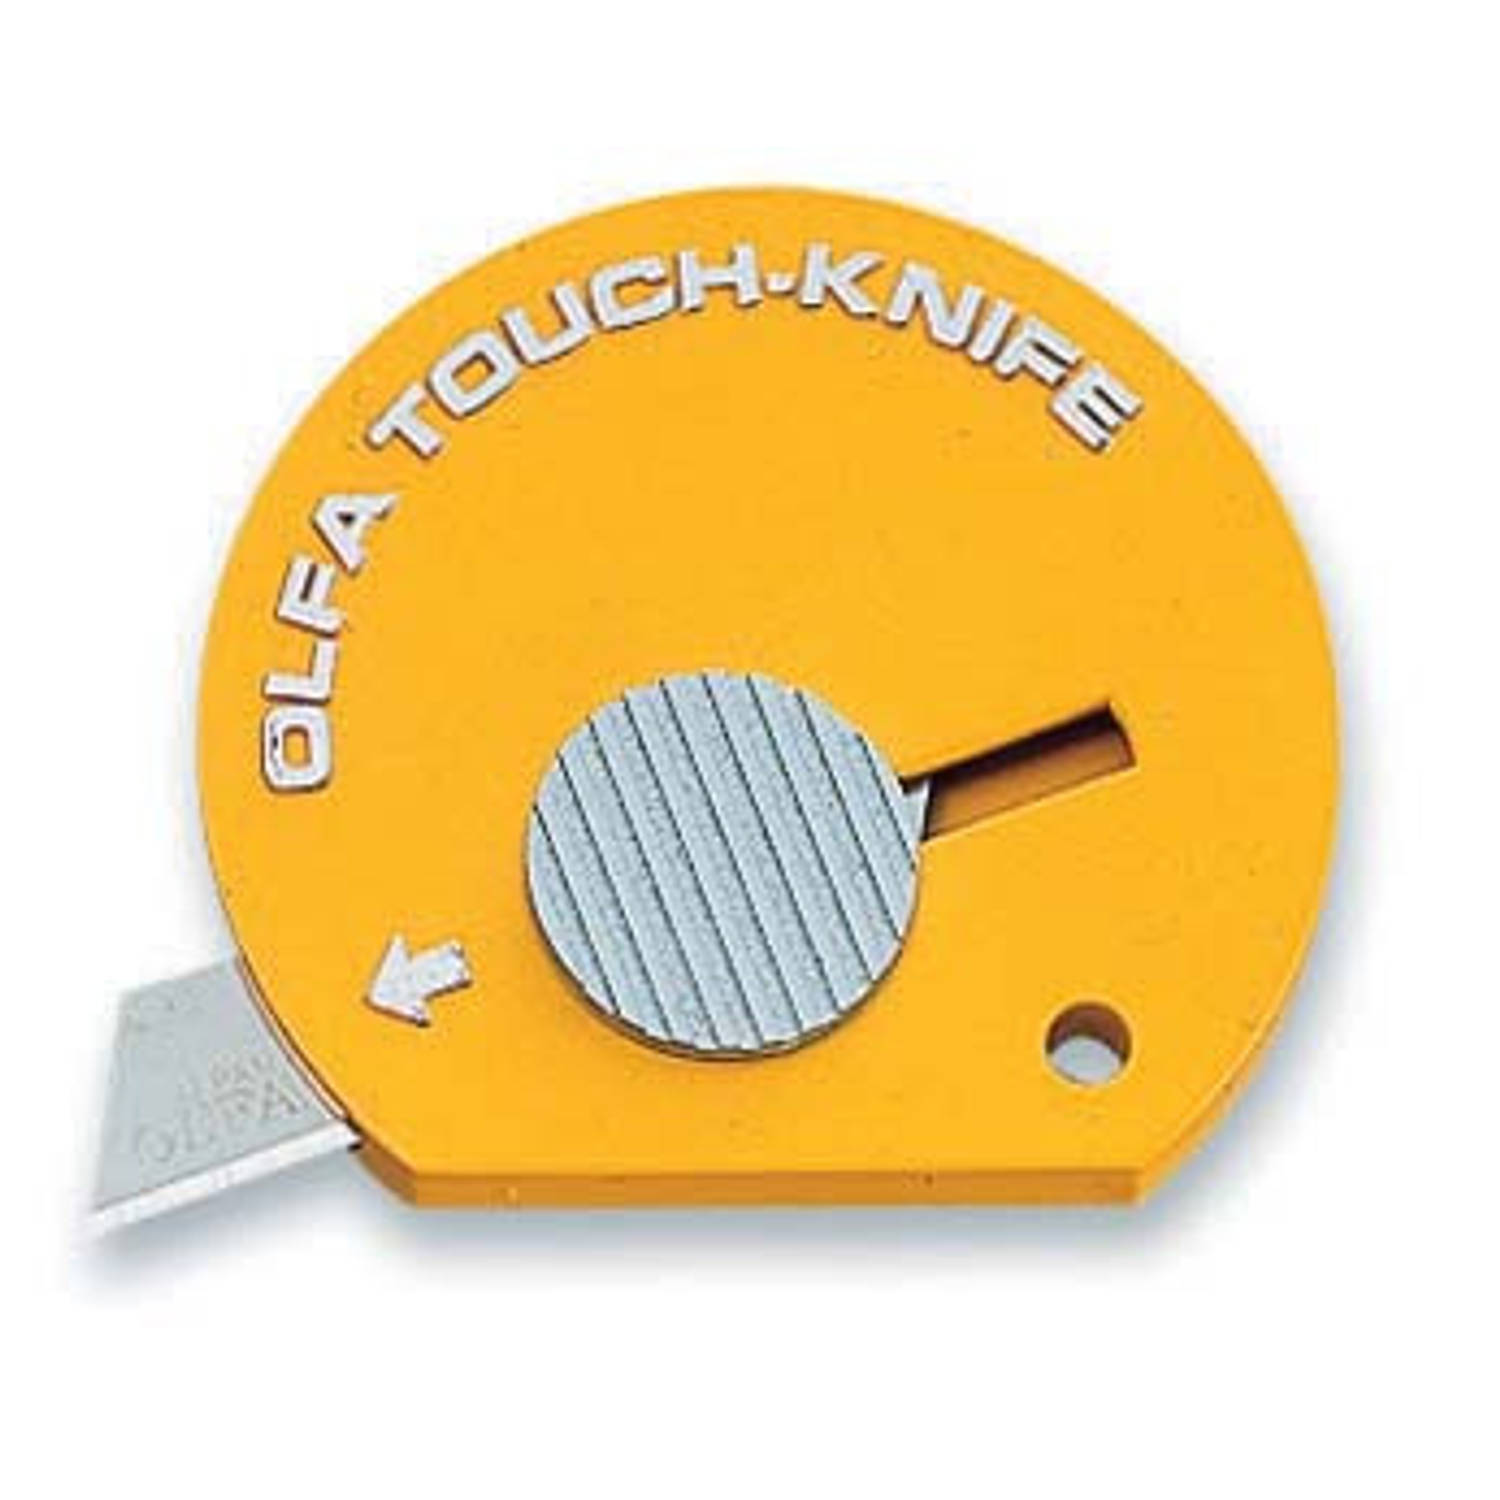 Olfa TK-4Y Touch Knife - Snijmesje - Geel